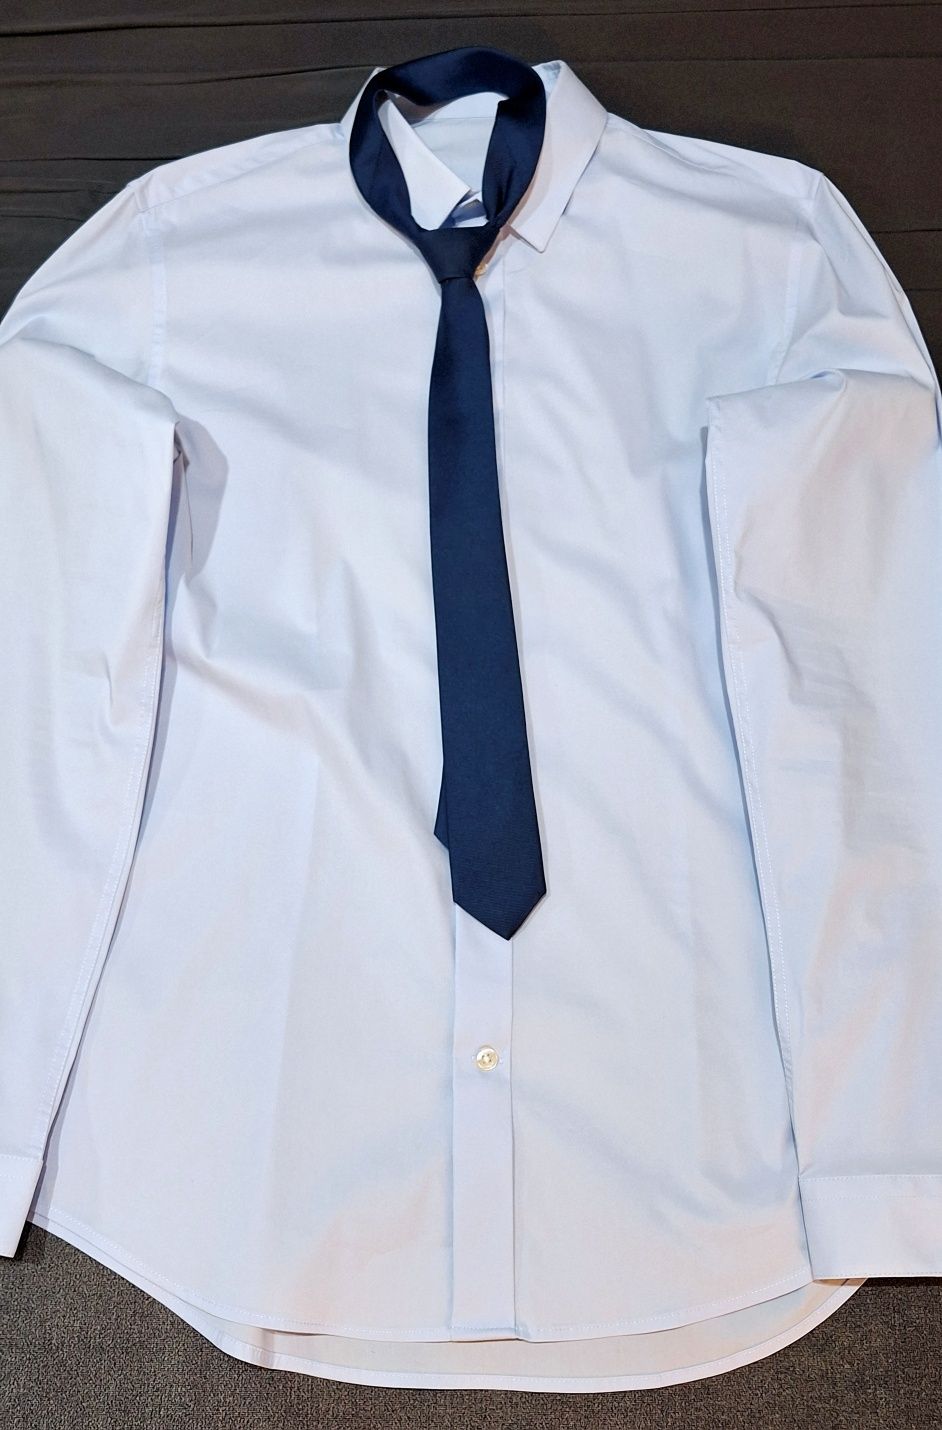 Garnitur plus koszula i krawat, komplet na studniówkę.